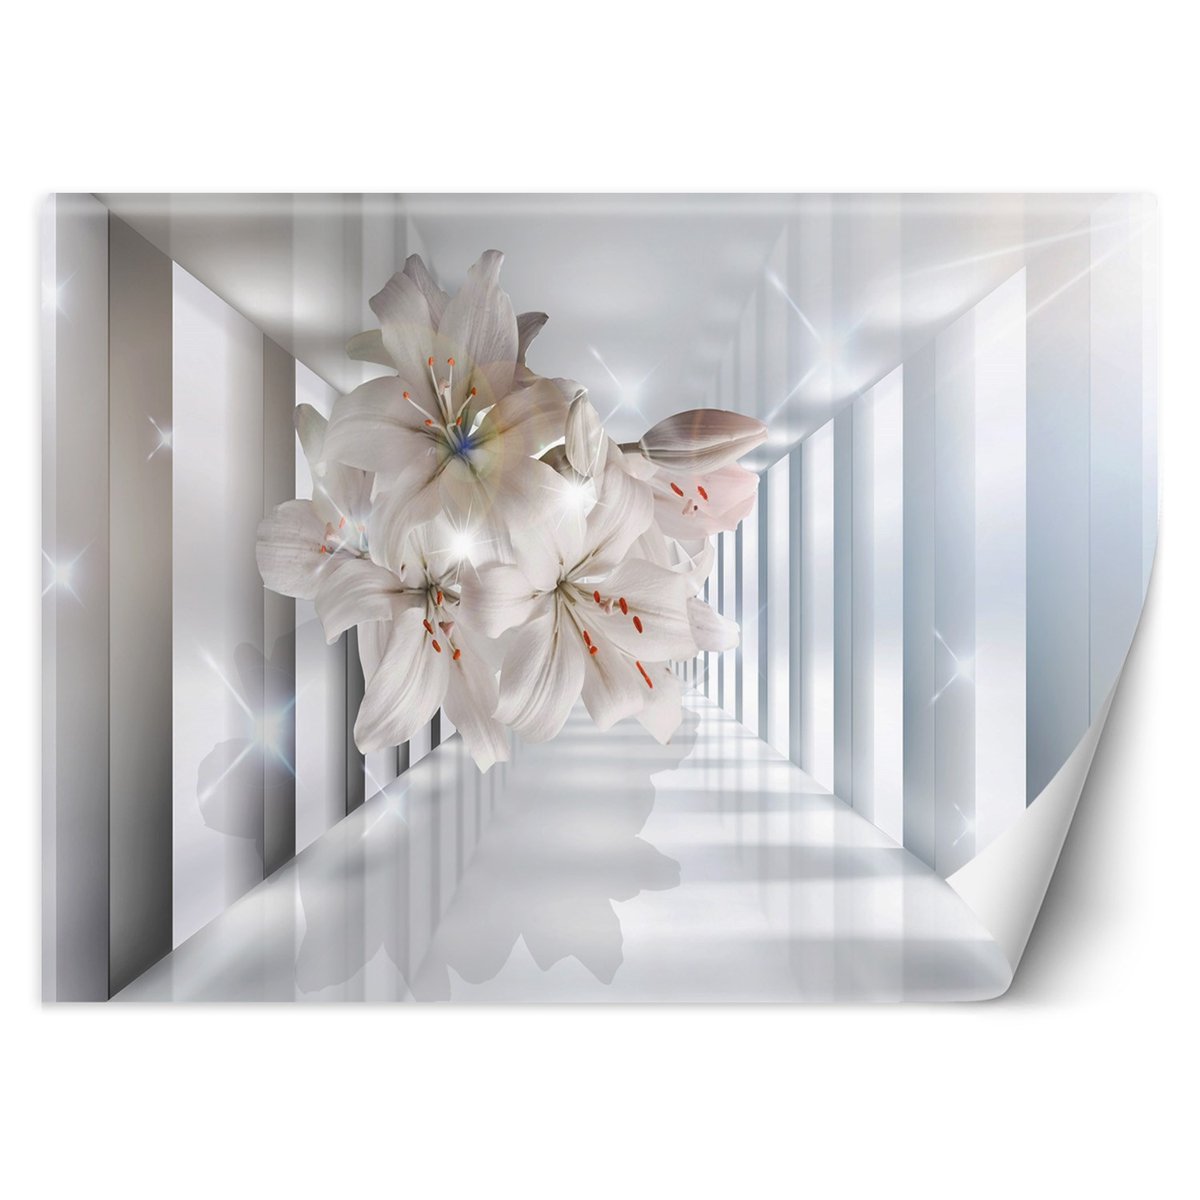 Fototapeta, do pokoju Kwiaty w korytarzu 3D (Rozmiar 254x184)